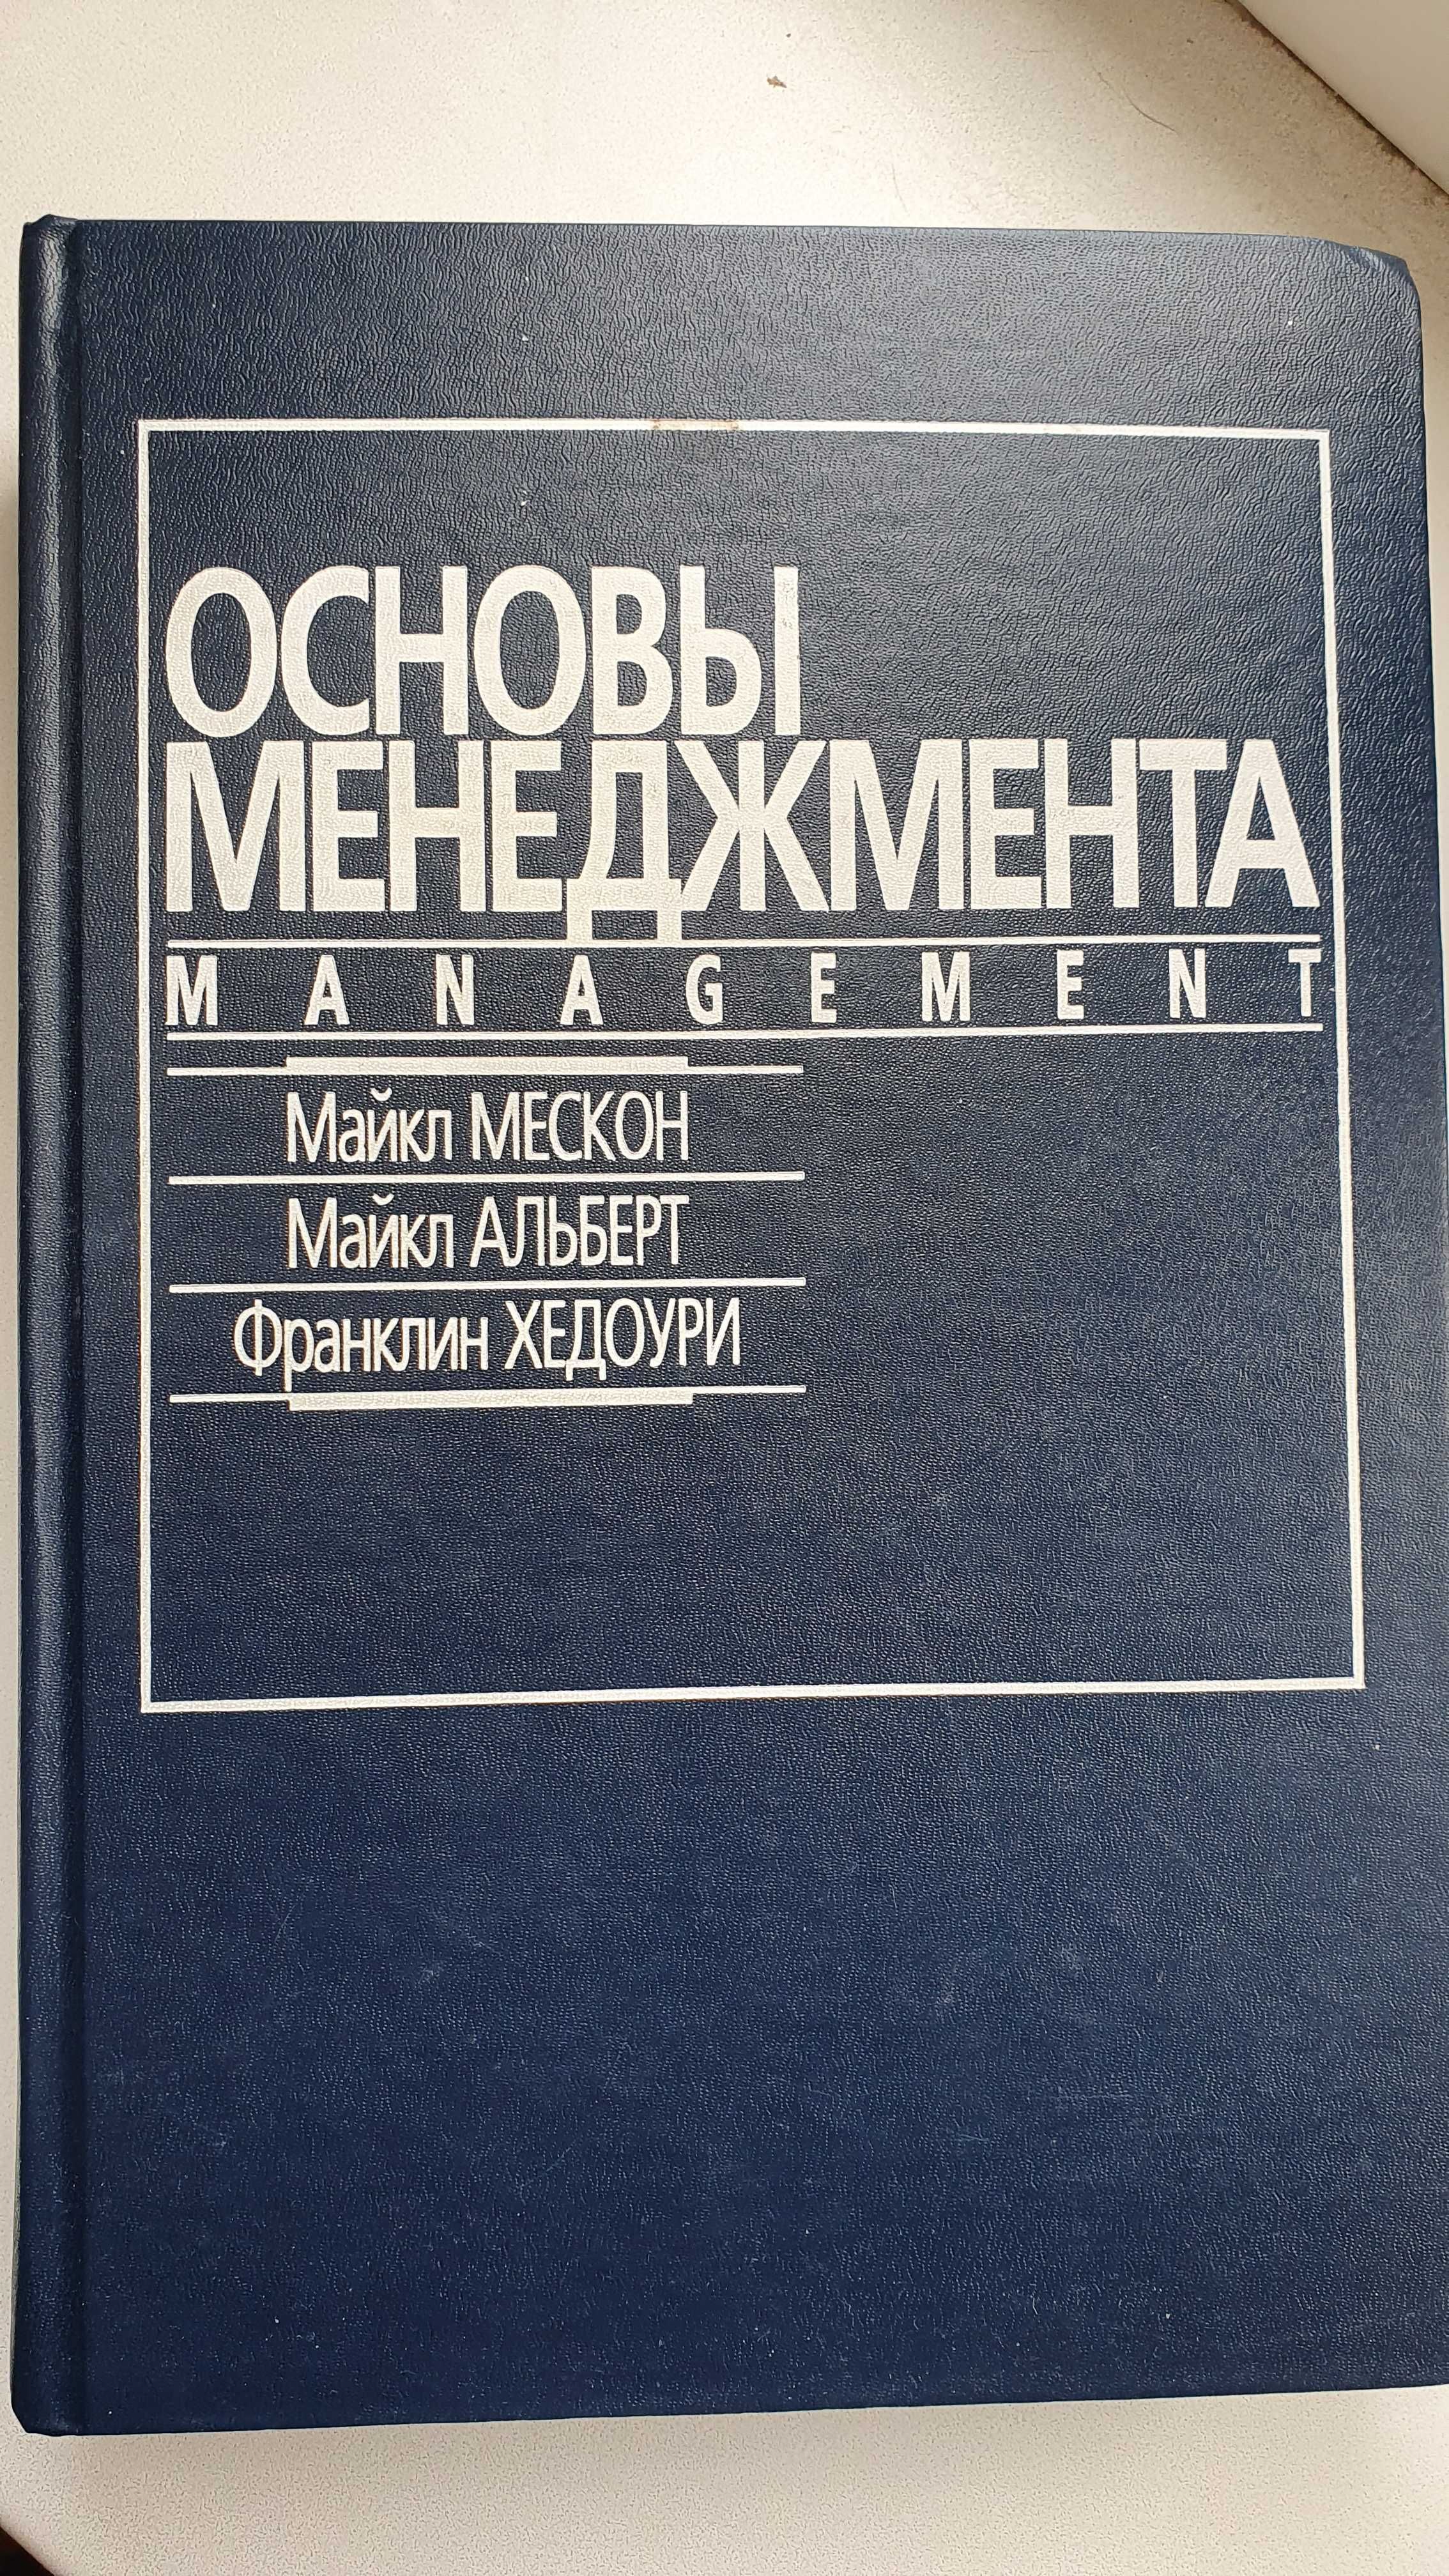 Книга "Основы менеджмента" Management Мескон Альберт Хедоури